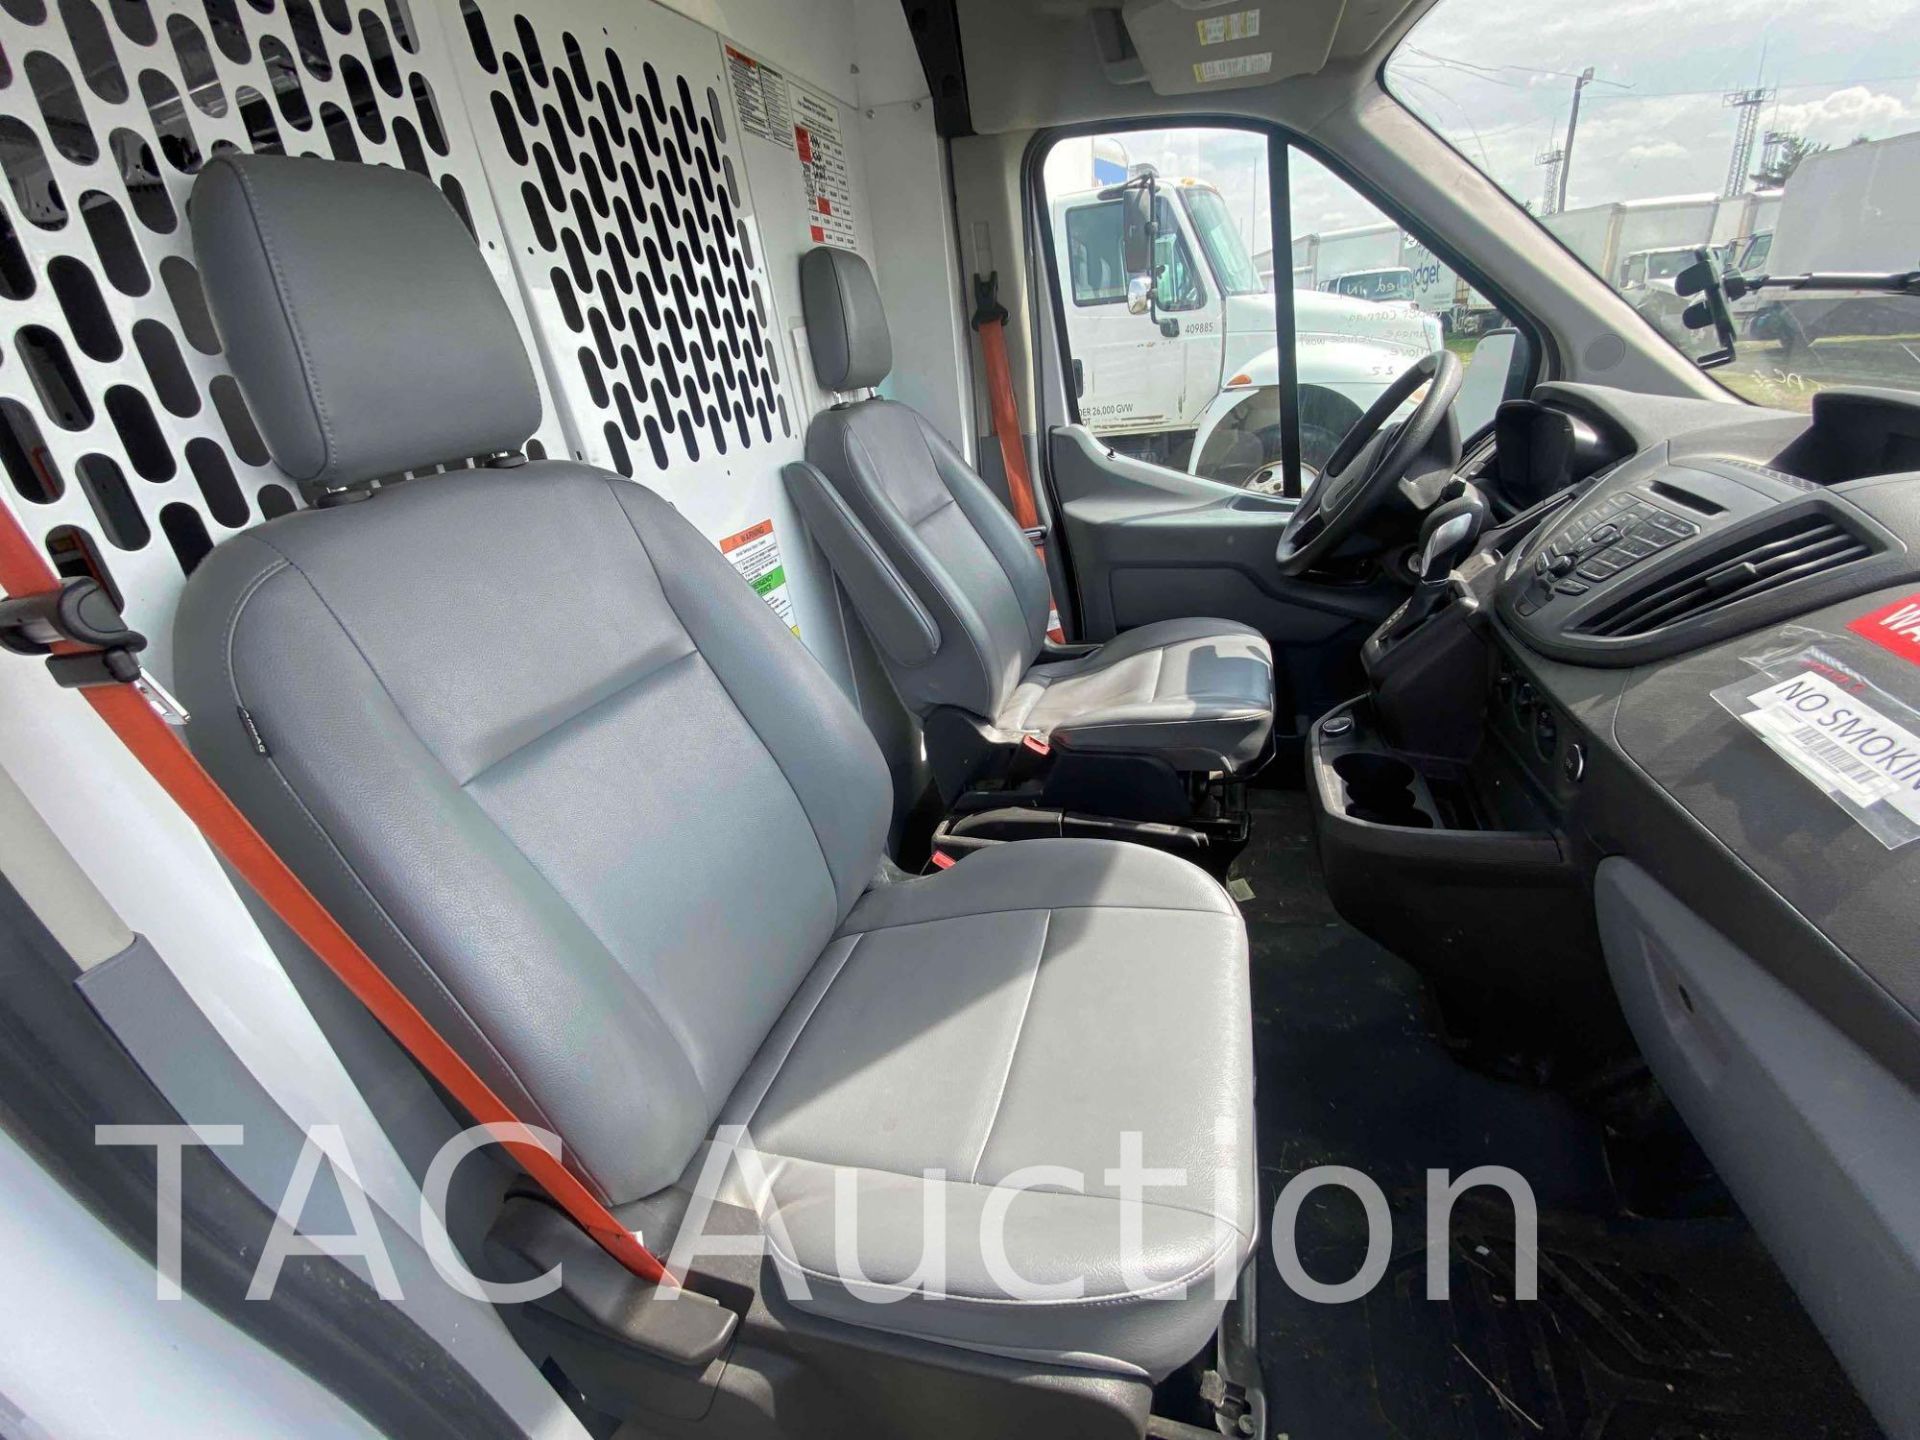 2019 Ford Transit 150 Cargo Van - Image 22 of 50